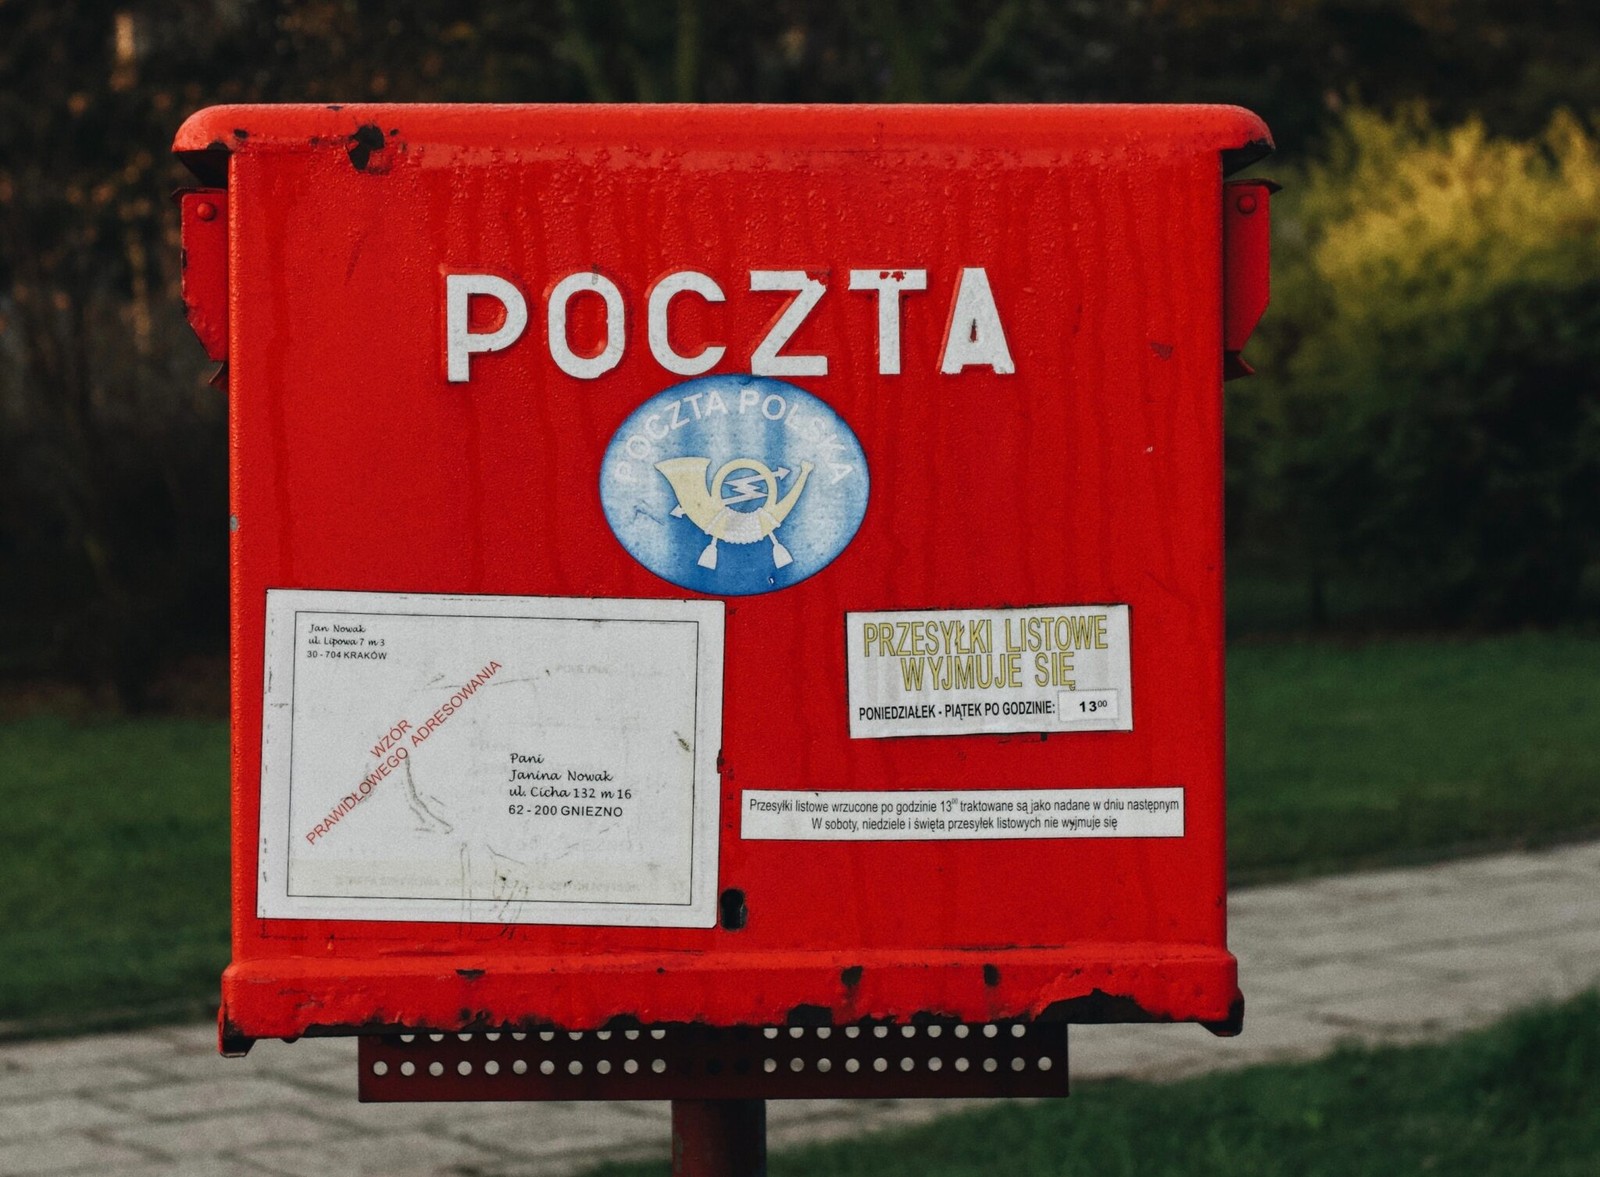 Uważaj, co wysyłasz Pocztą Polską. Teraz będą mogli sprawdzić Twoją paczkę bez otwierania jej